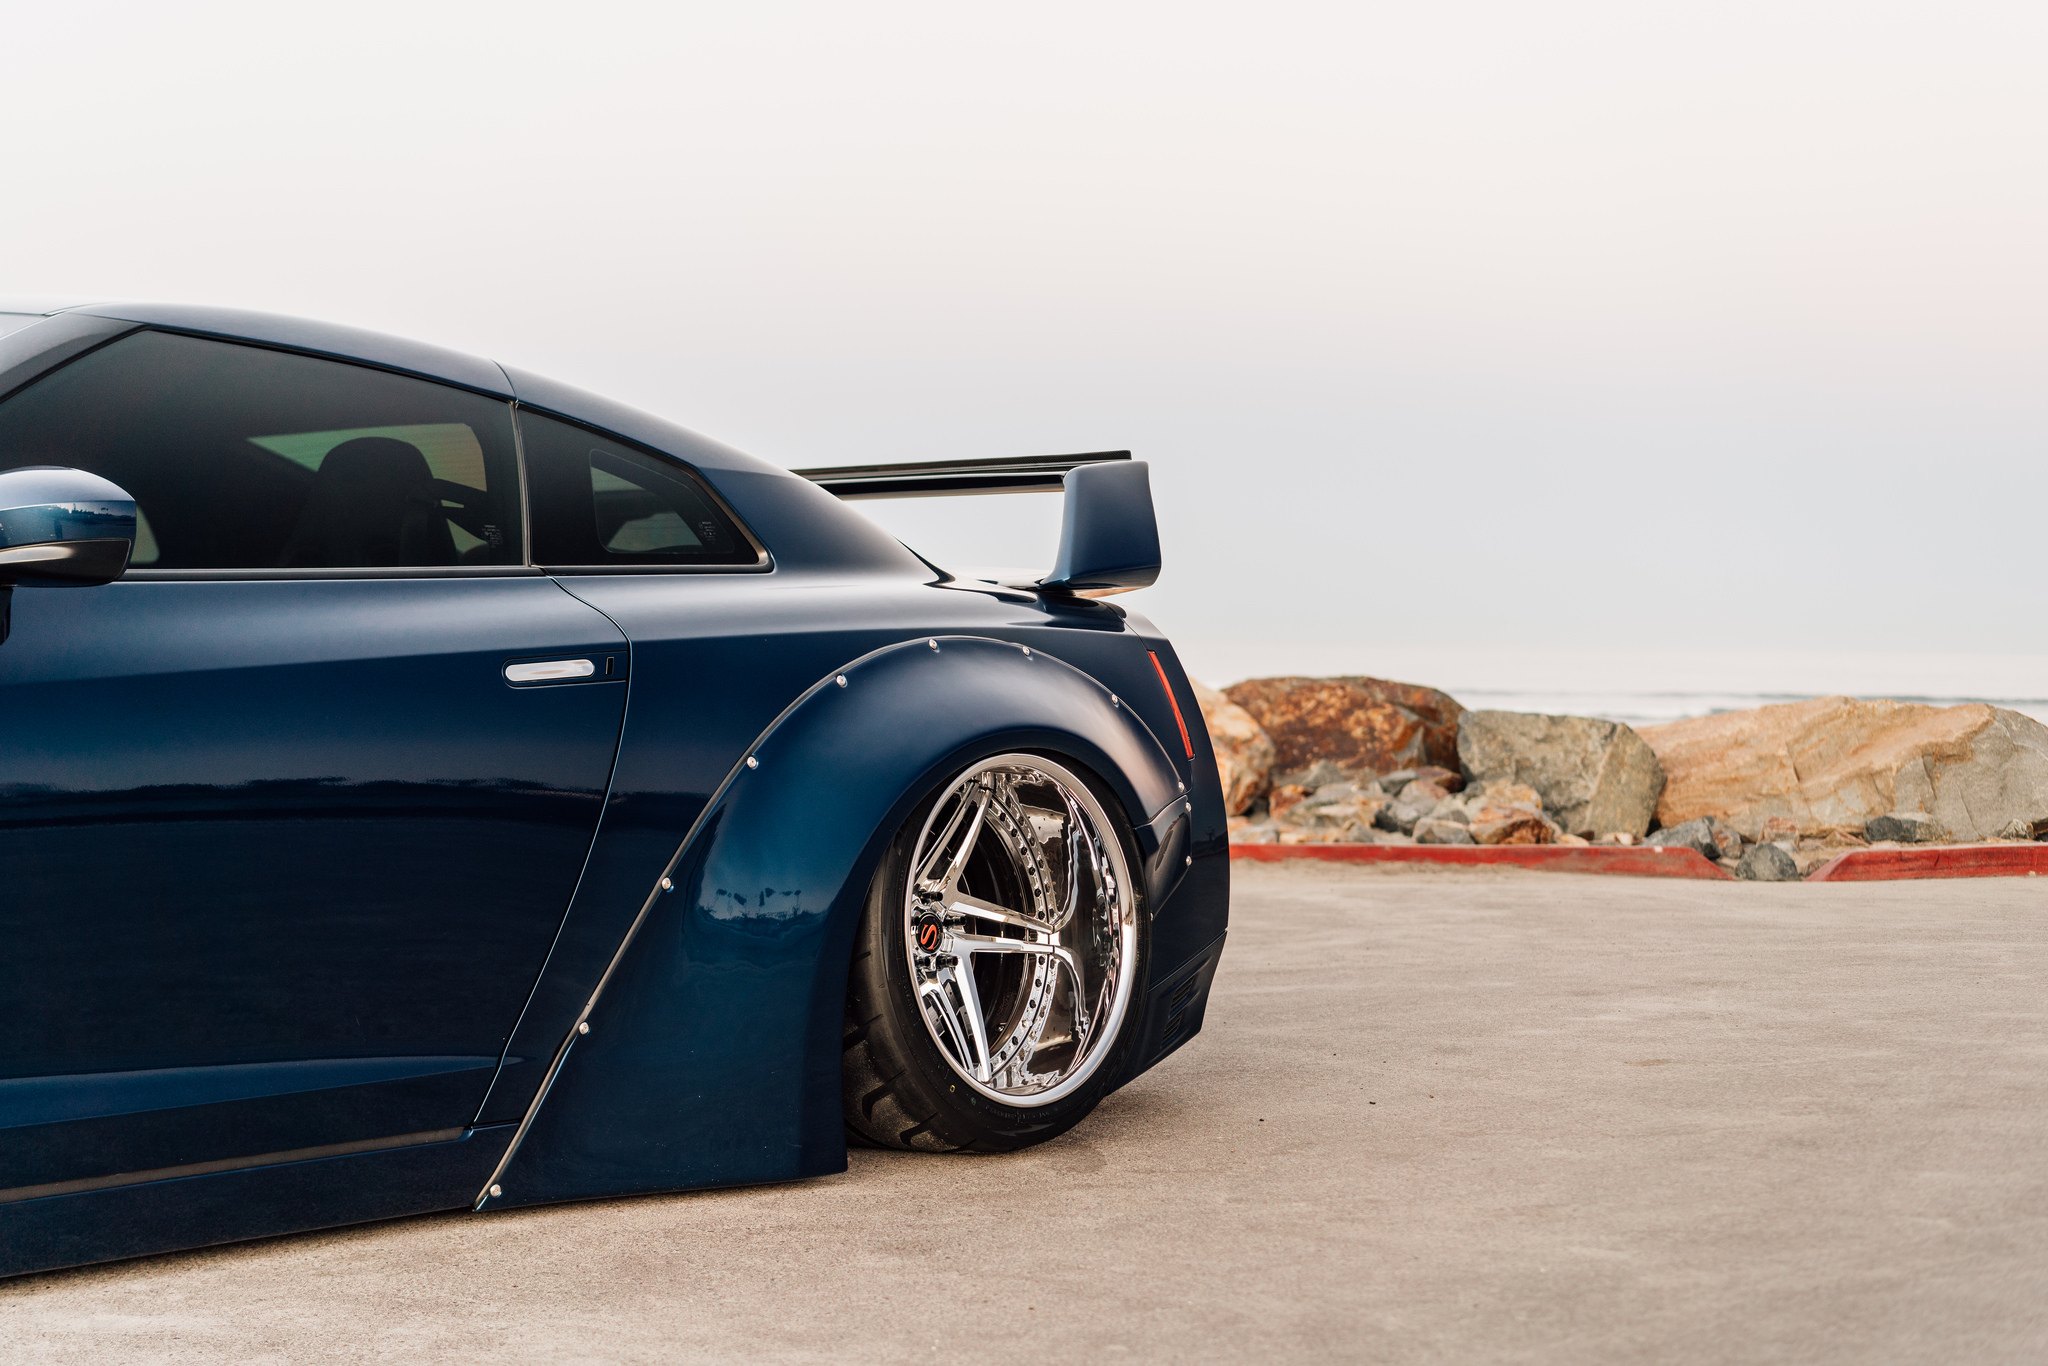 Custom Chrome Wheels on Dark Blue Nissan GT-R - Photo by Zachary Lenfest